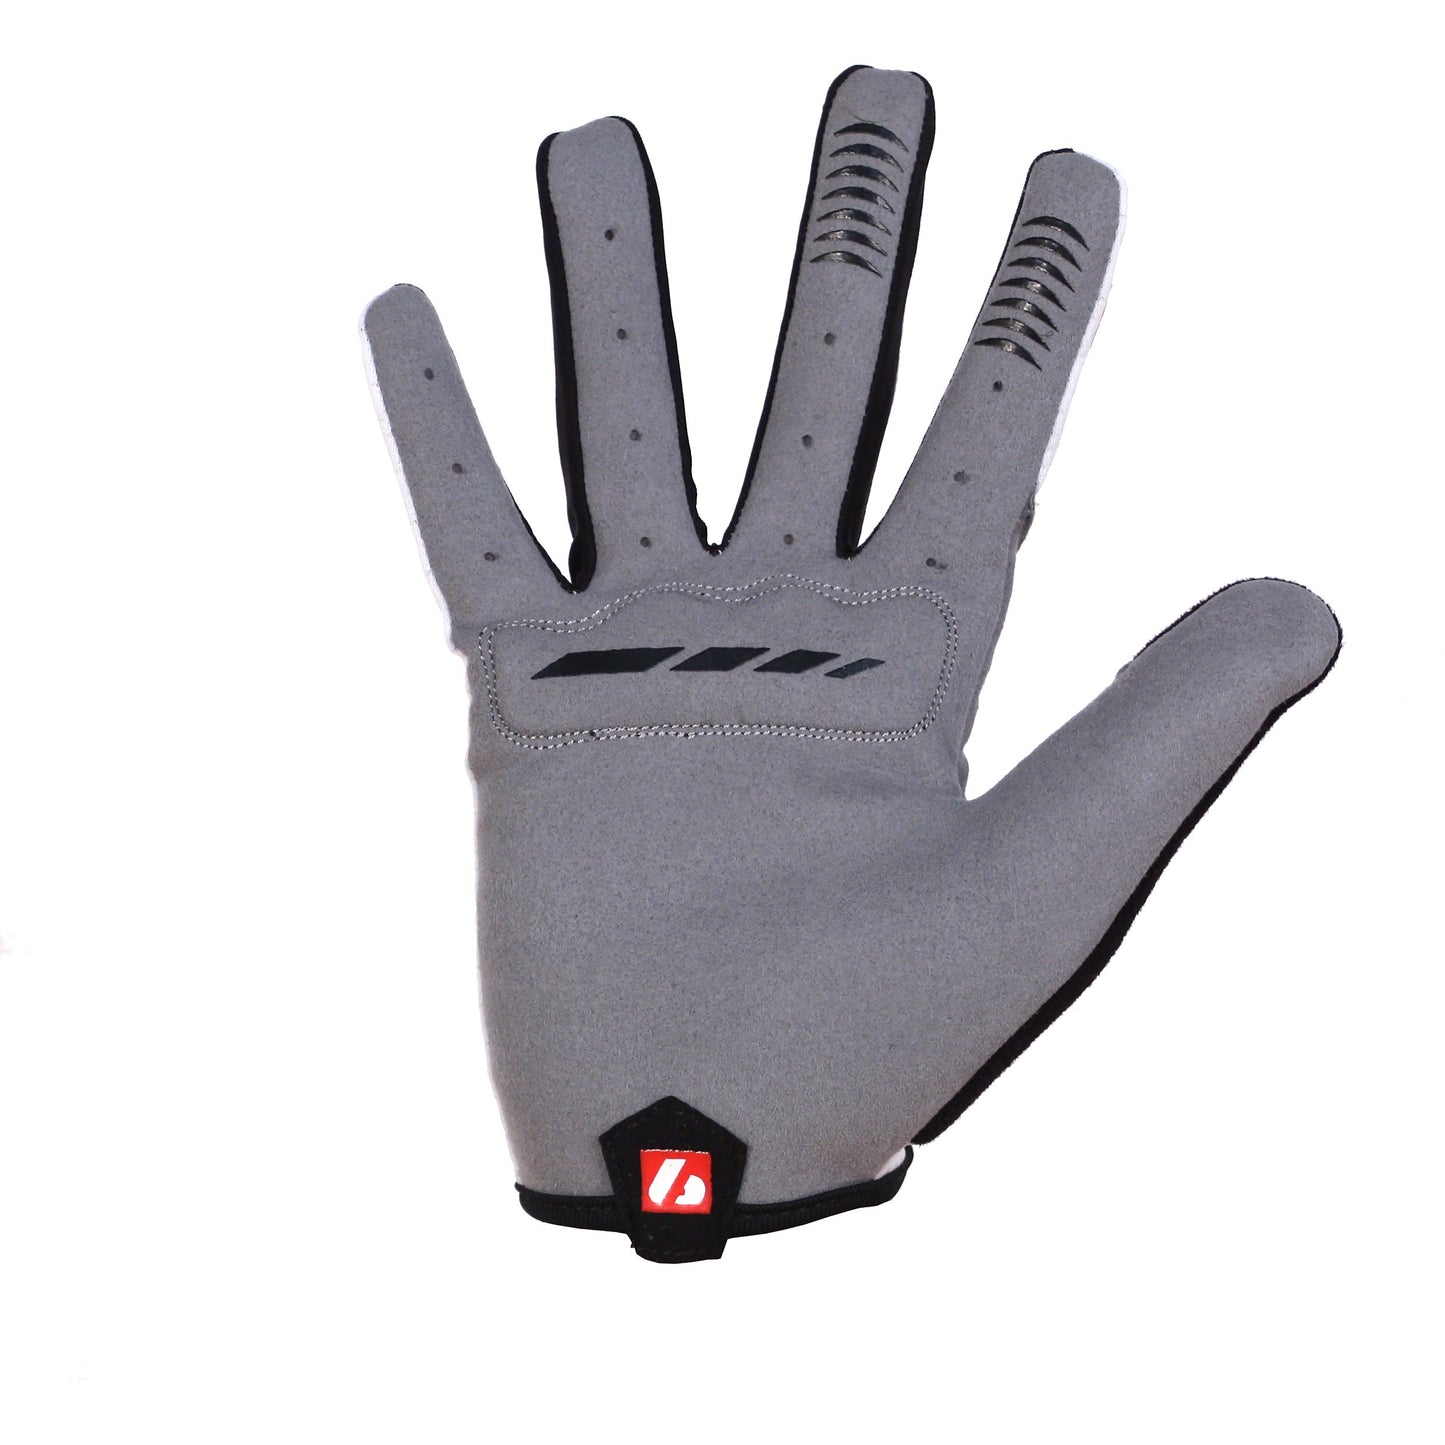 BG-01 Long bike gloves: Light, isolating, high-performance, White